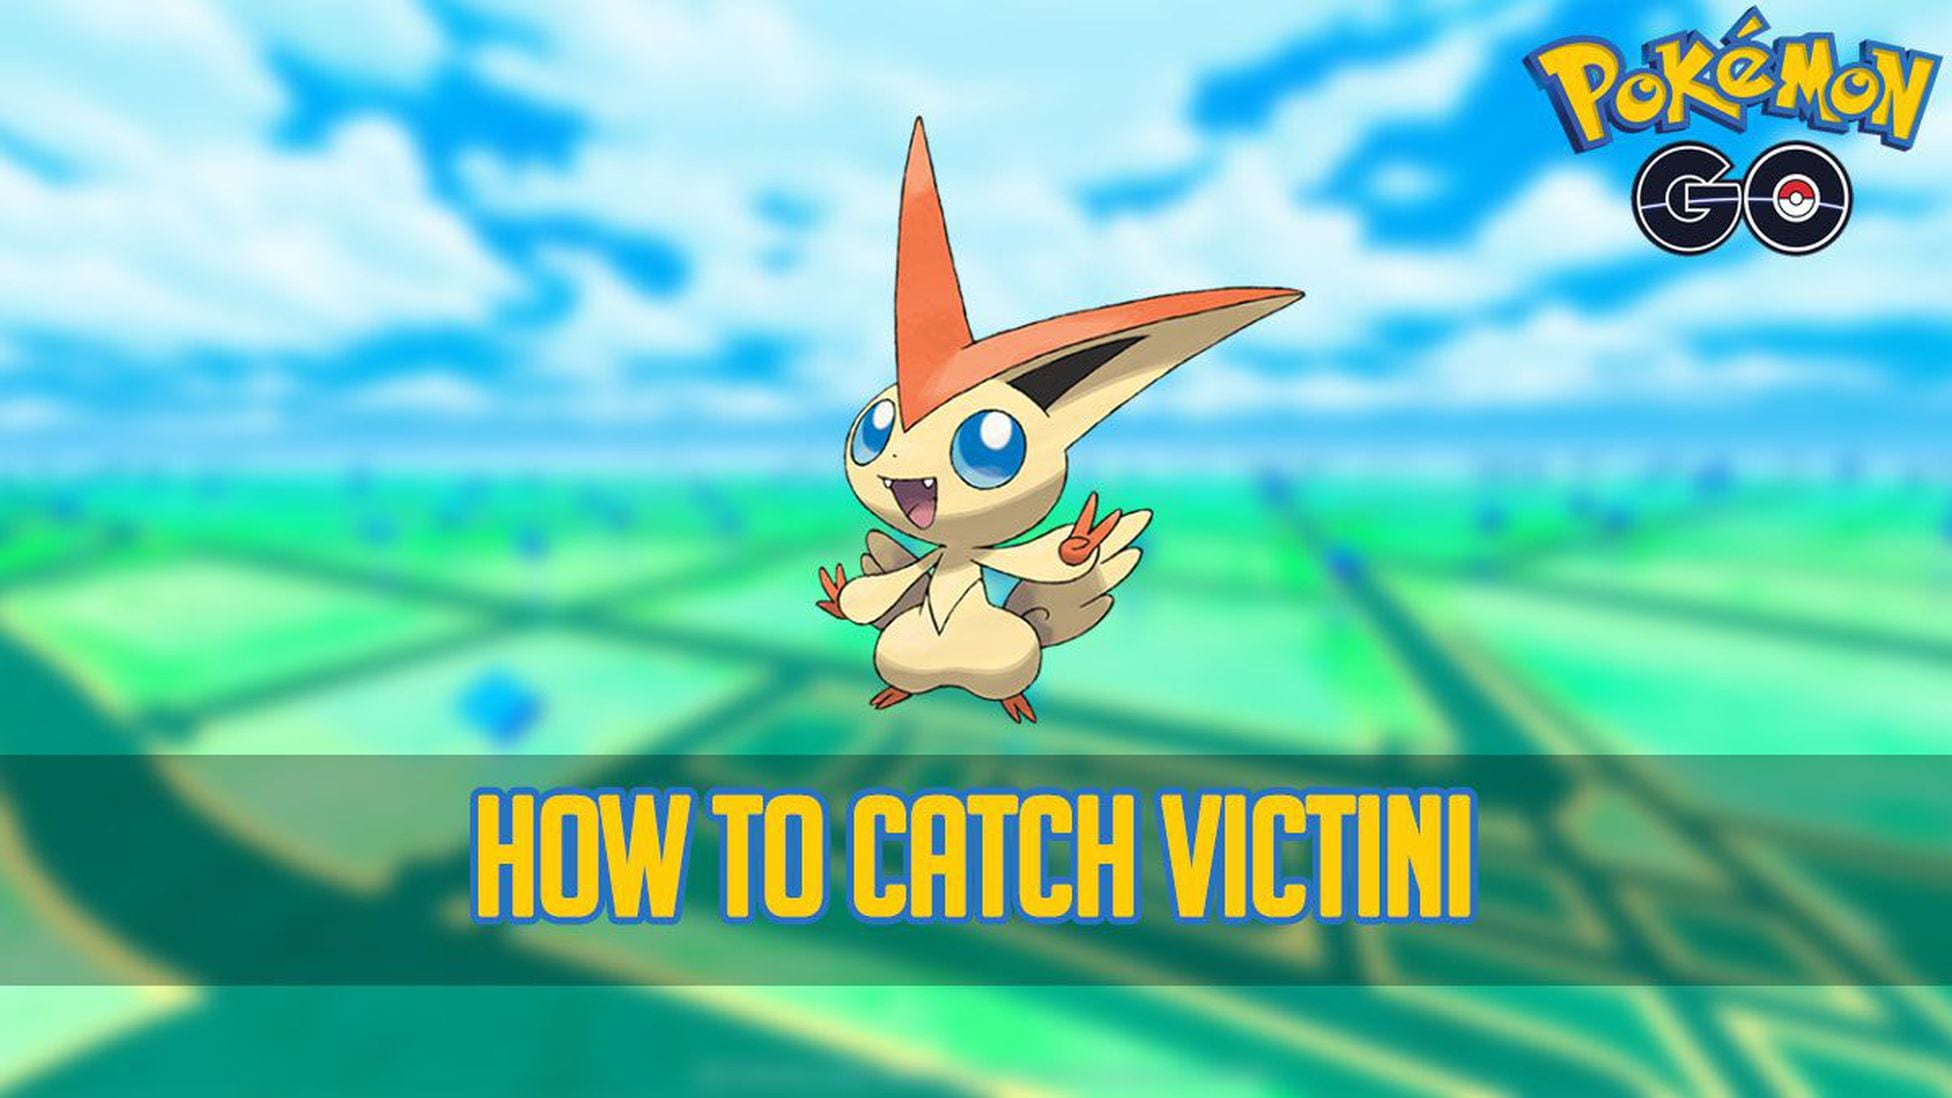 How to catch Pokémon #494 Victini in Pokémon GO - Meristation